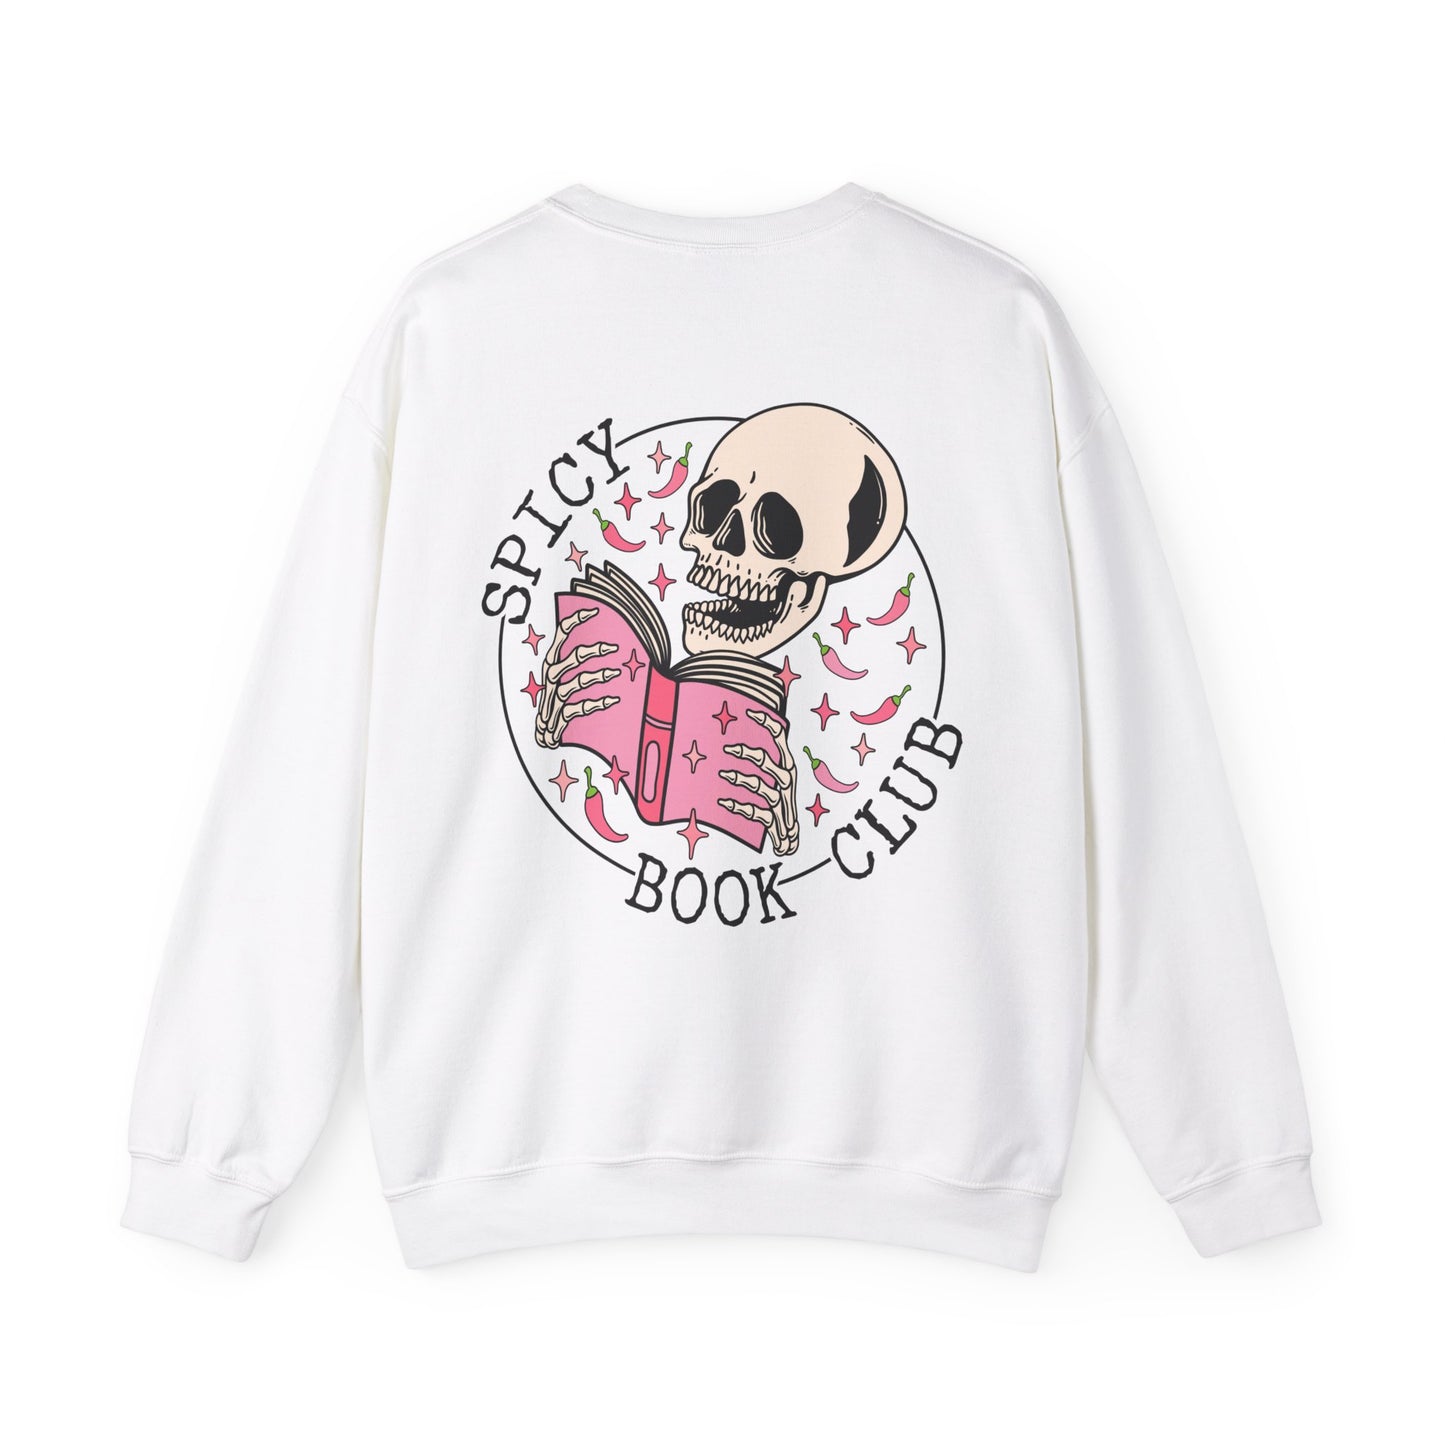 Spicy Book Club - Bookish - Crewneck Sweatshirt Pullover